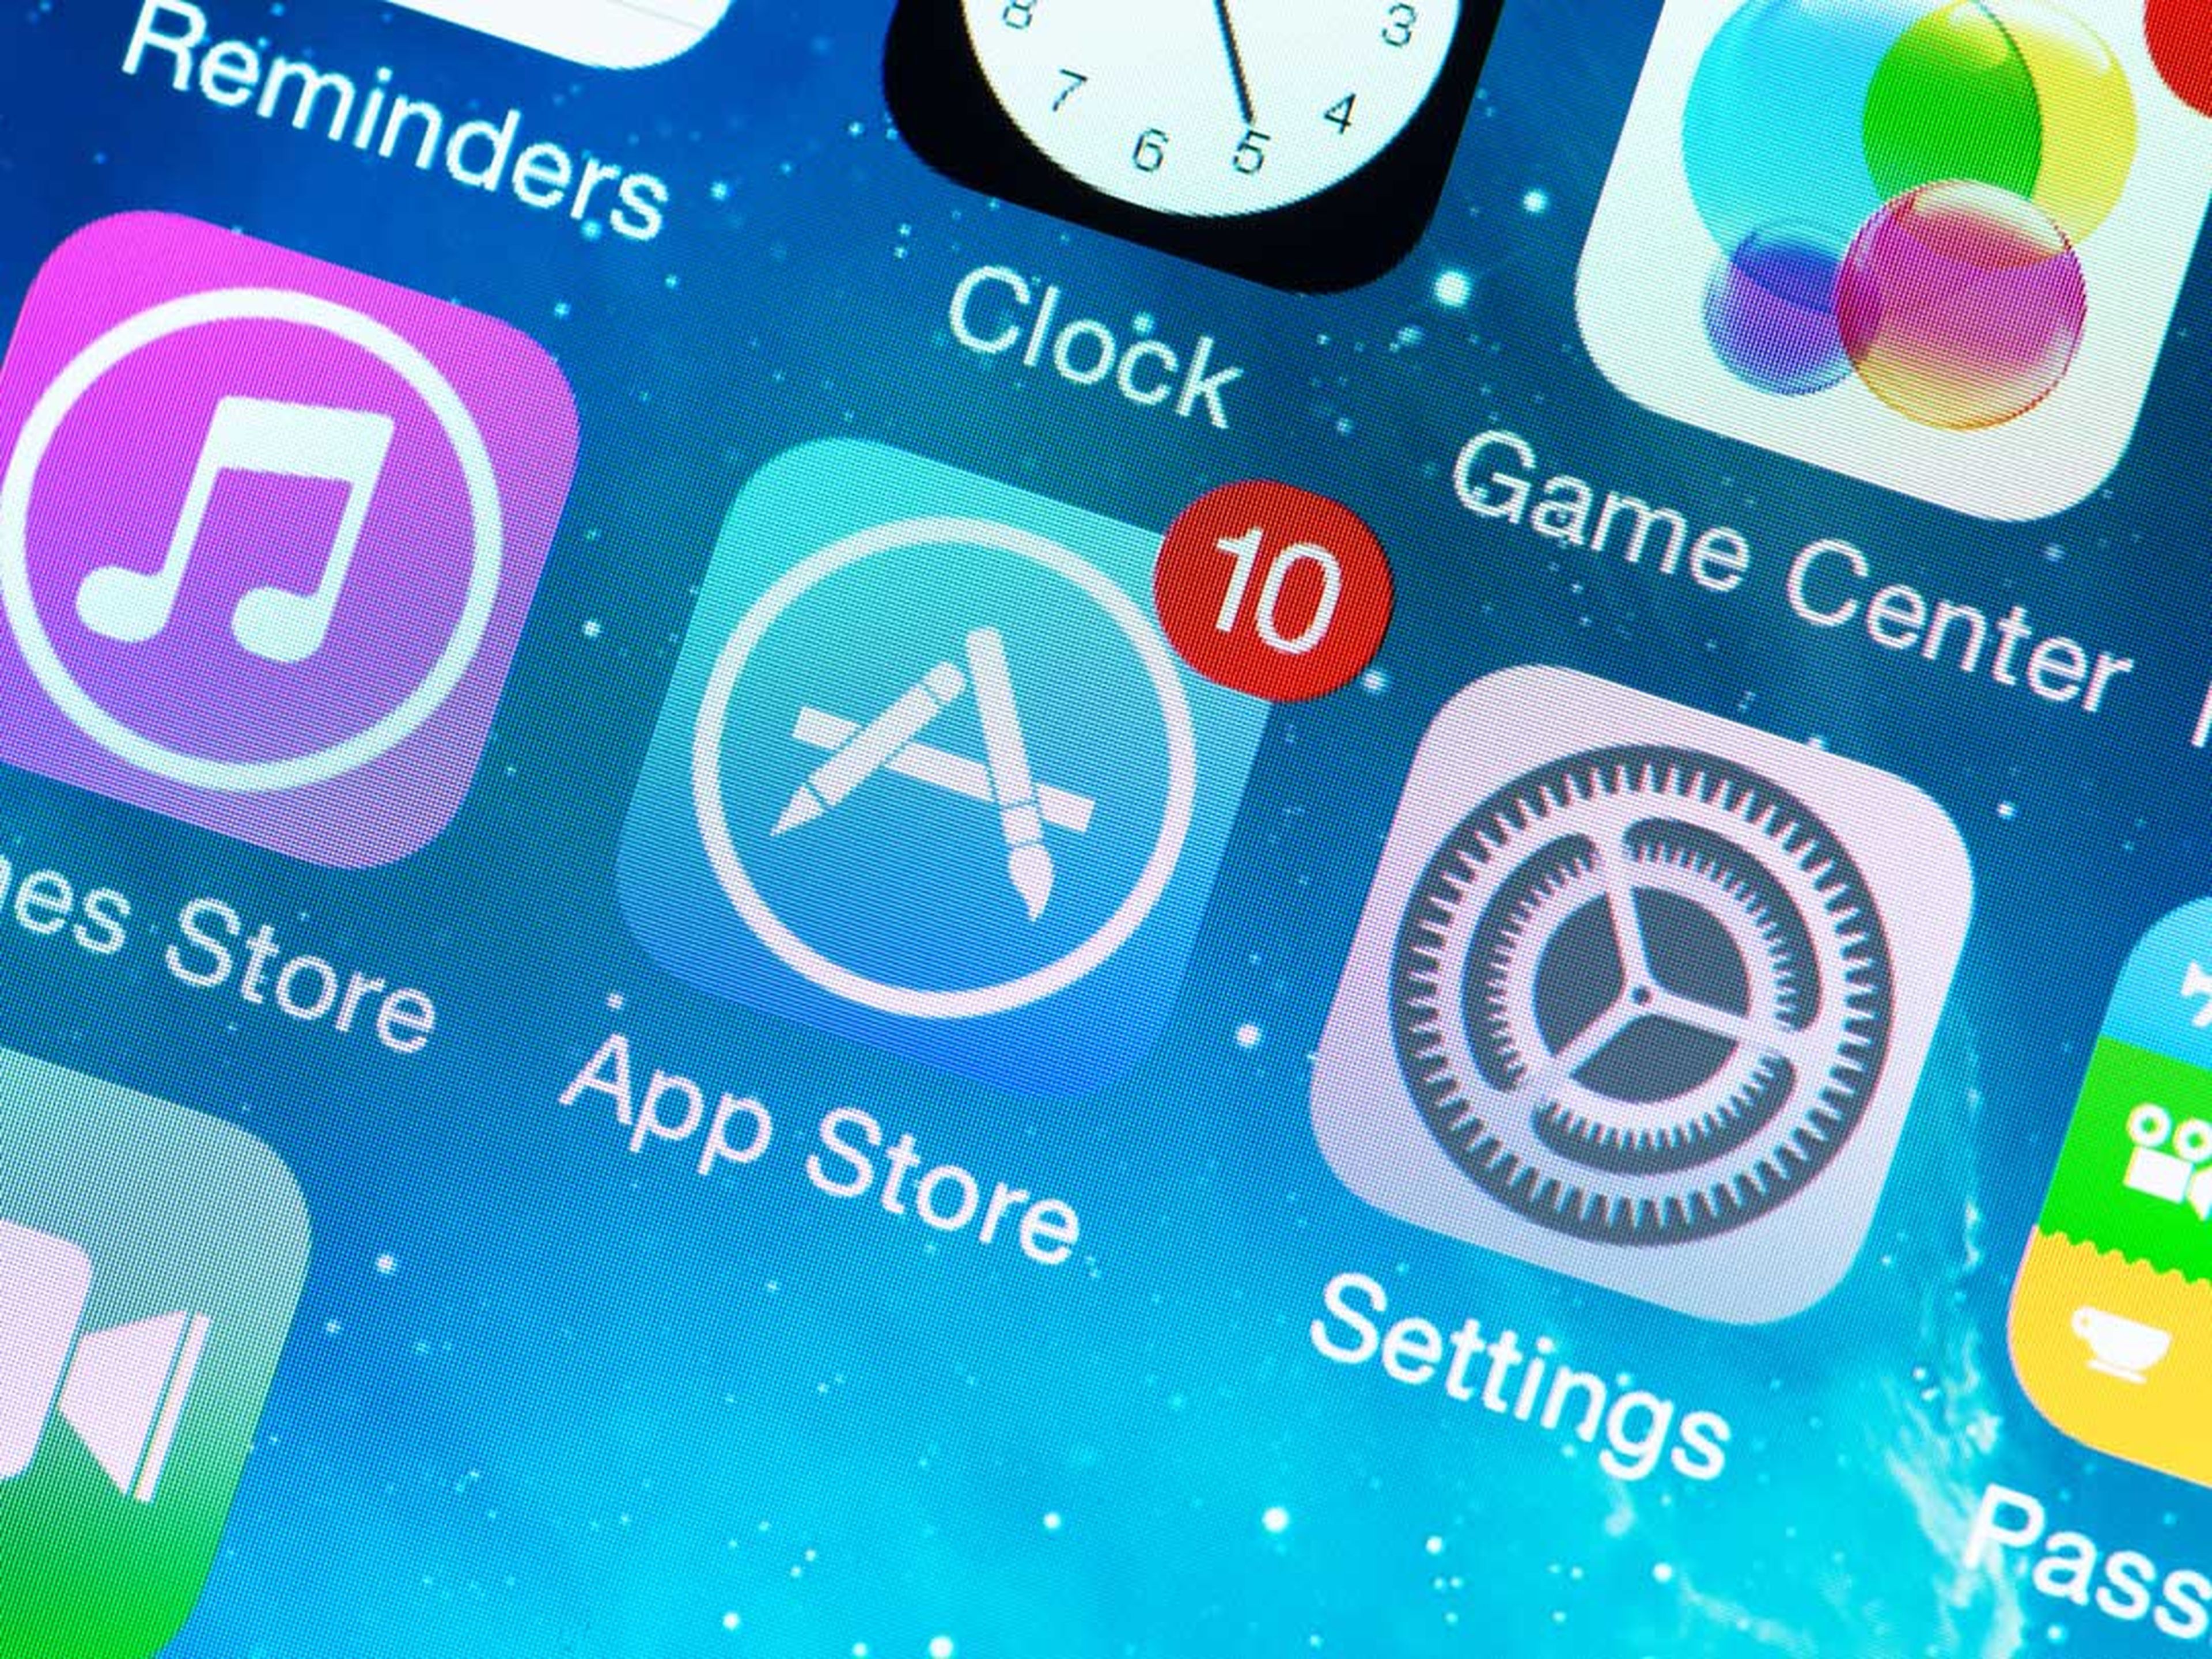 Icono de la App Store en un iPhone